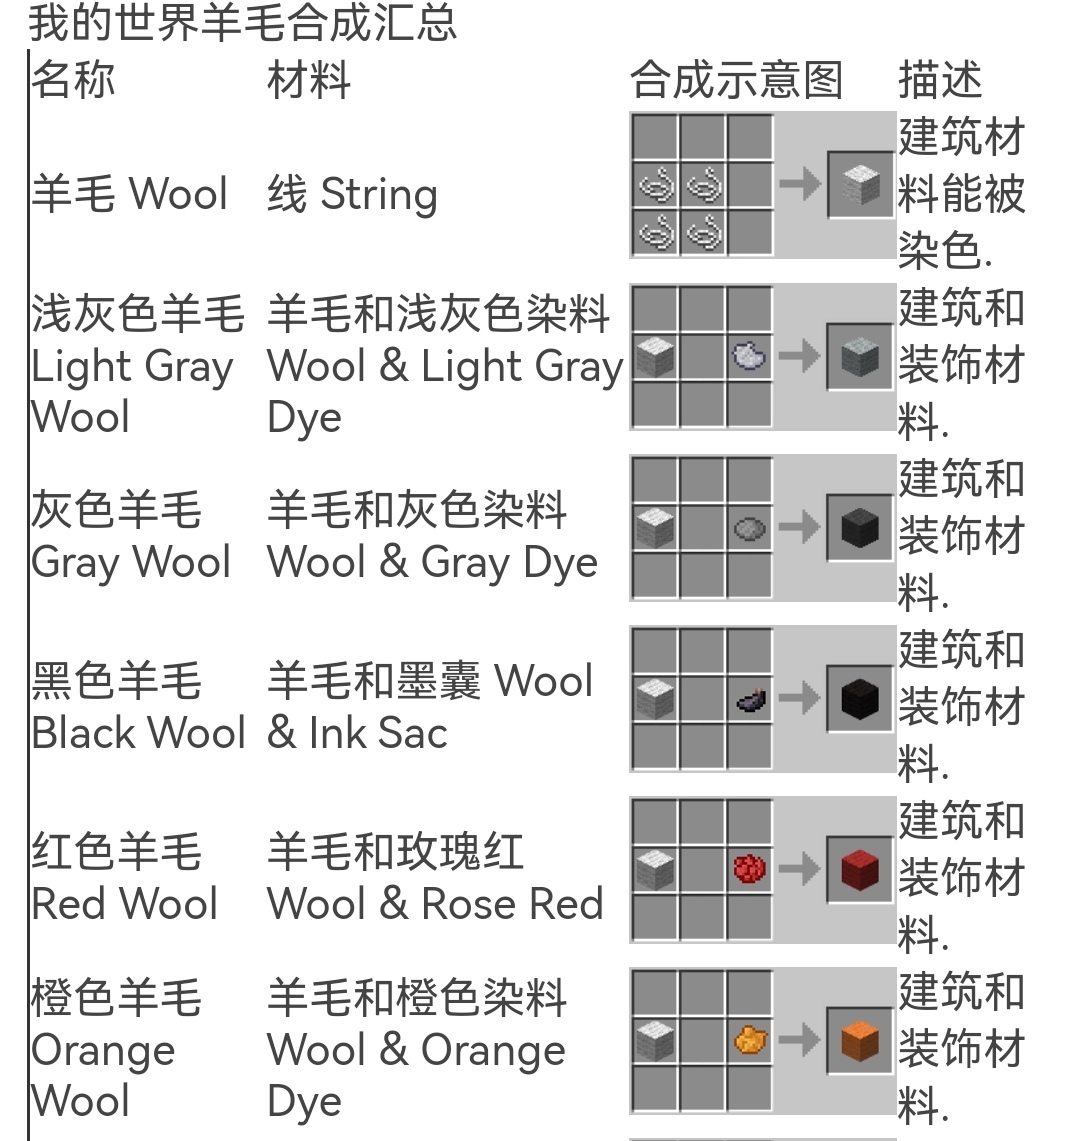 建筑方块不同染色羊毛的合成配方是什么 需要搭配合成示意图 Lu18玩吧